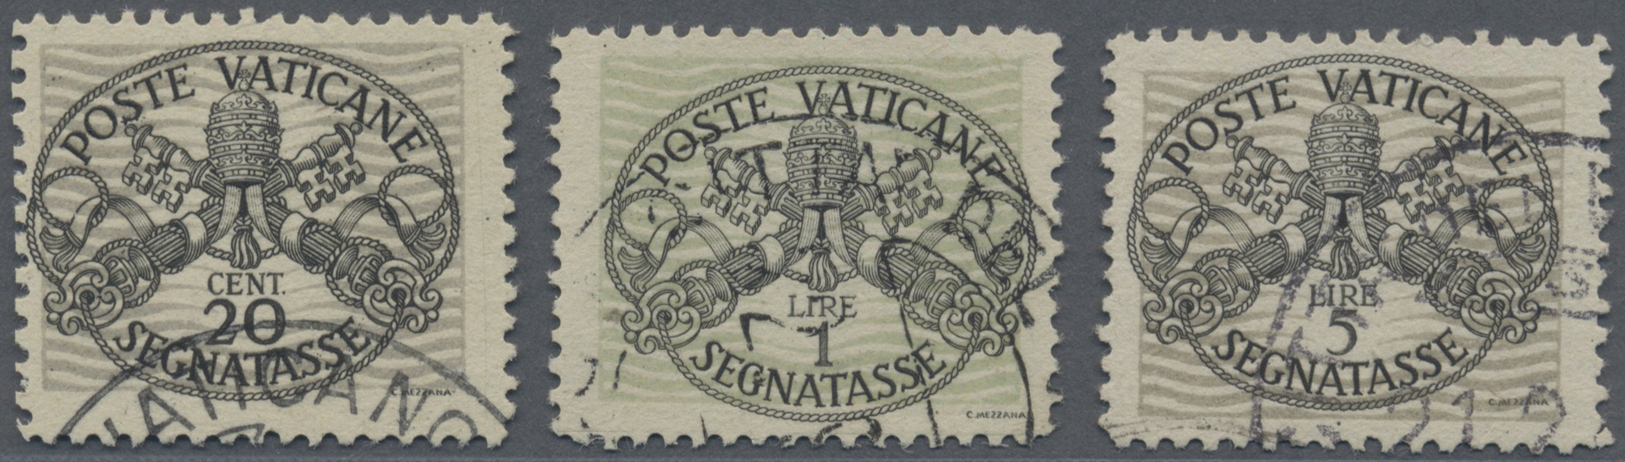 O Vatikan - Portomarken: 1946, Wappenzeichnung 20 C, 1 L Und 5 L, Breite Unterdrucklinien Auf Grauem Papier, I A - Postage Due